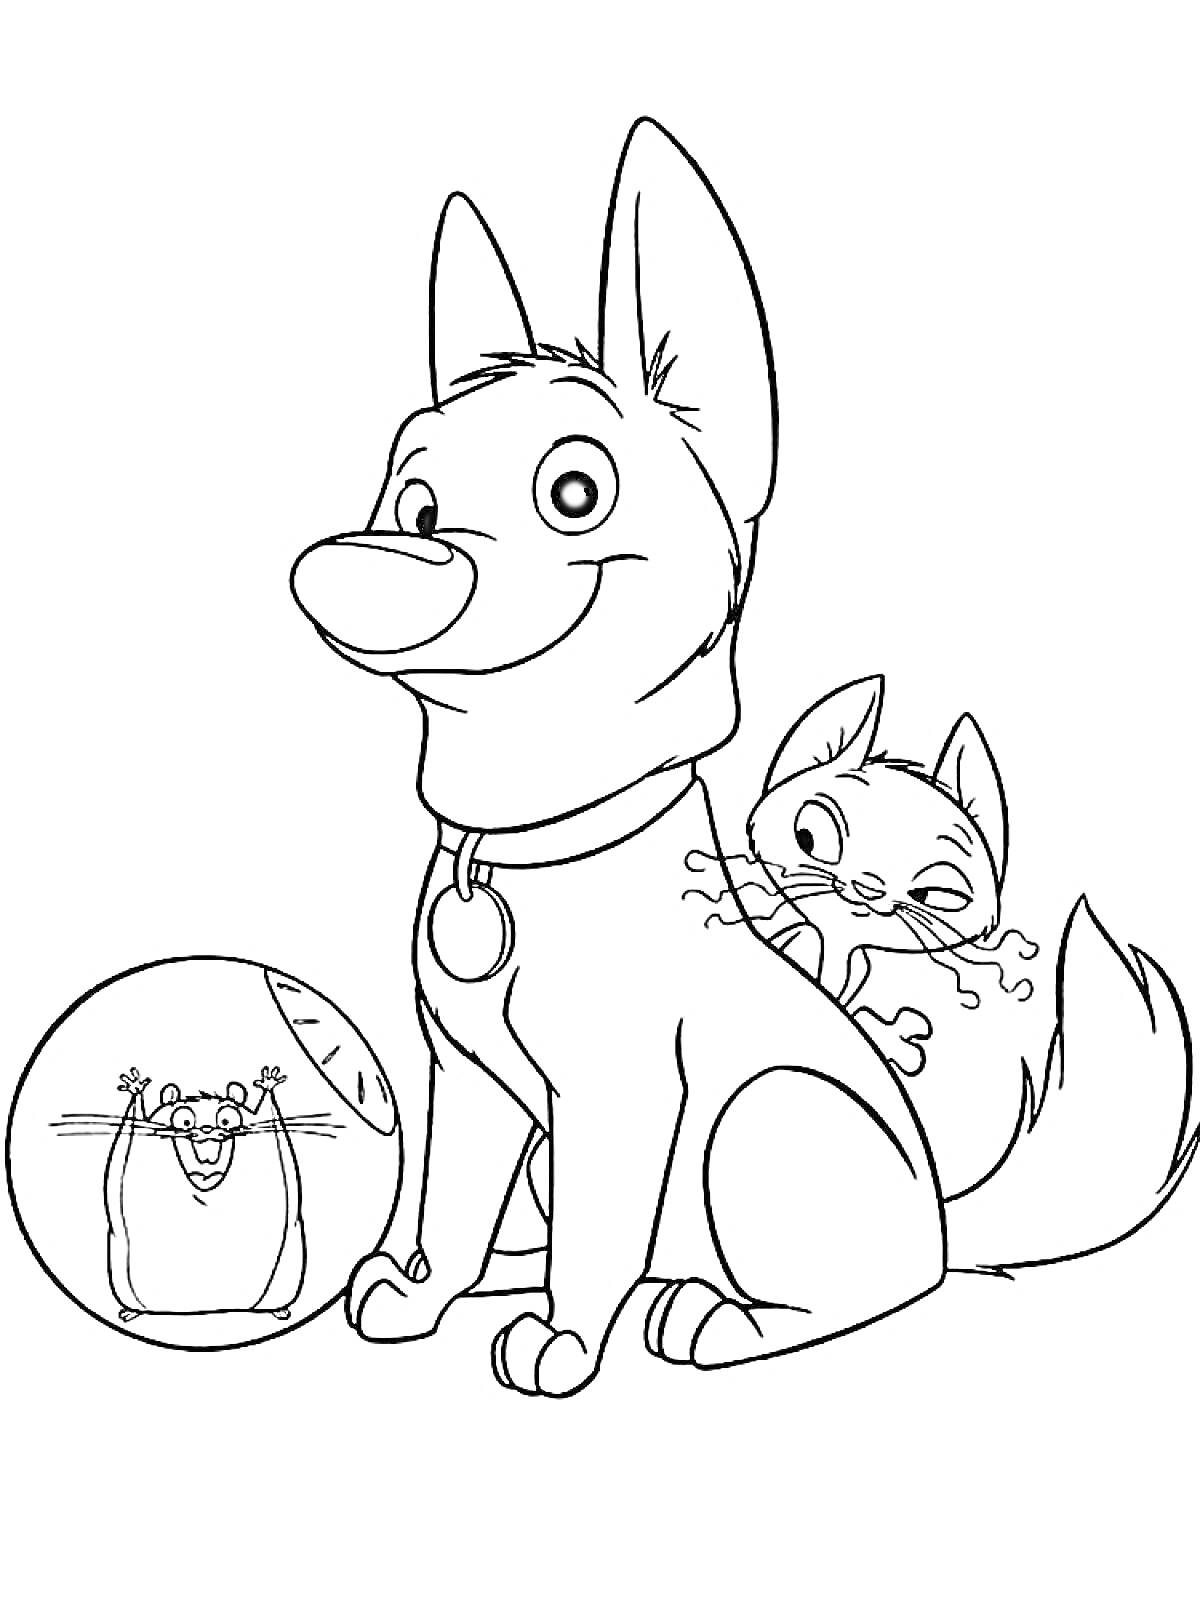 Собака, кошка и хомяк в шаре